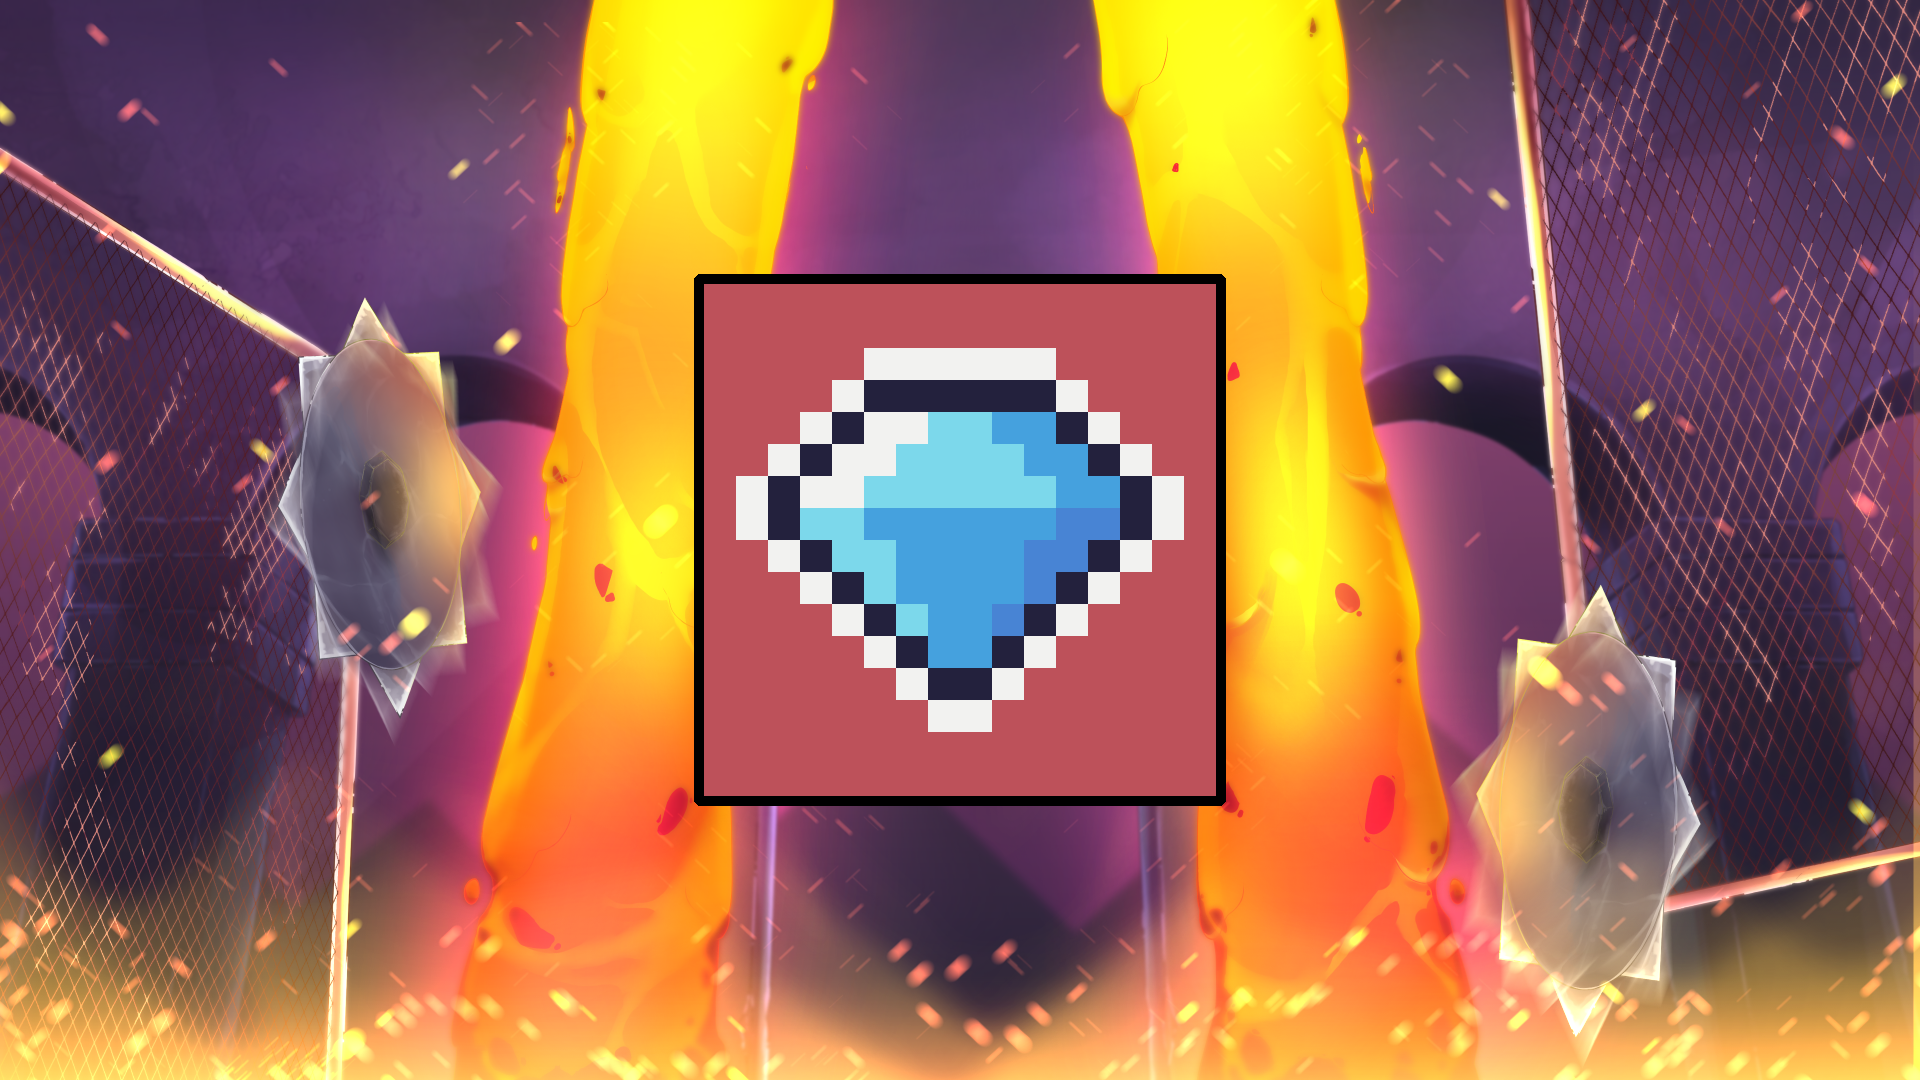 A hundred shiny little gems!